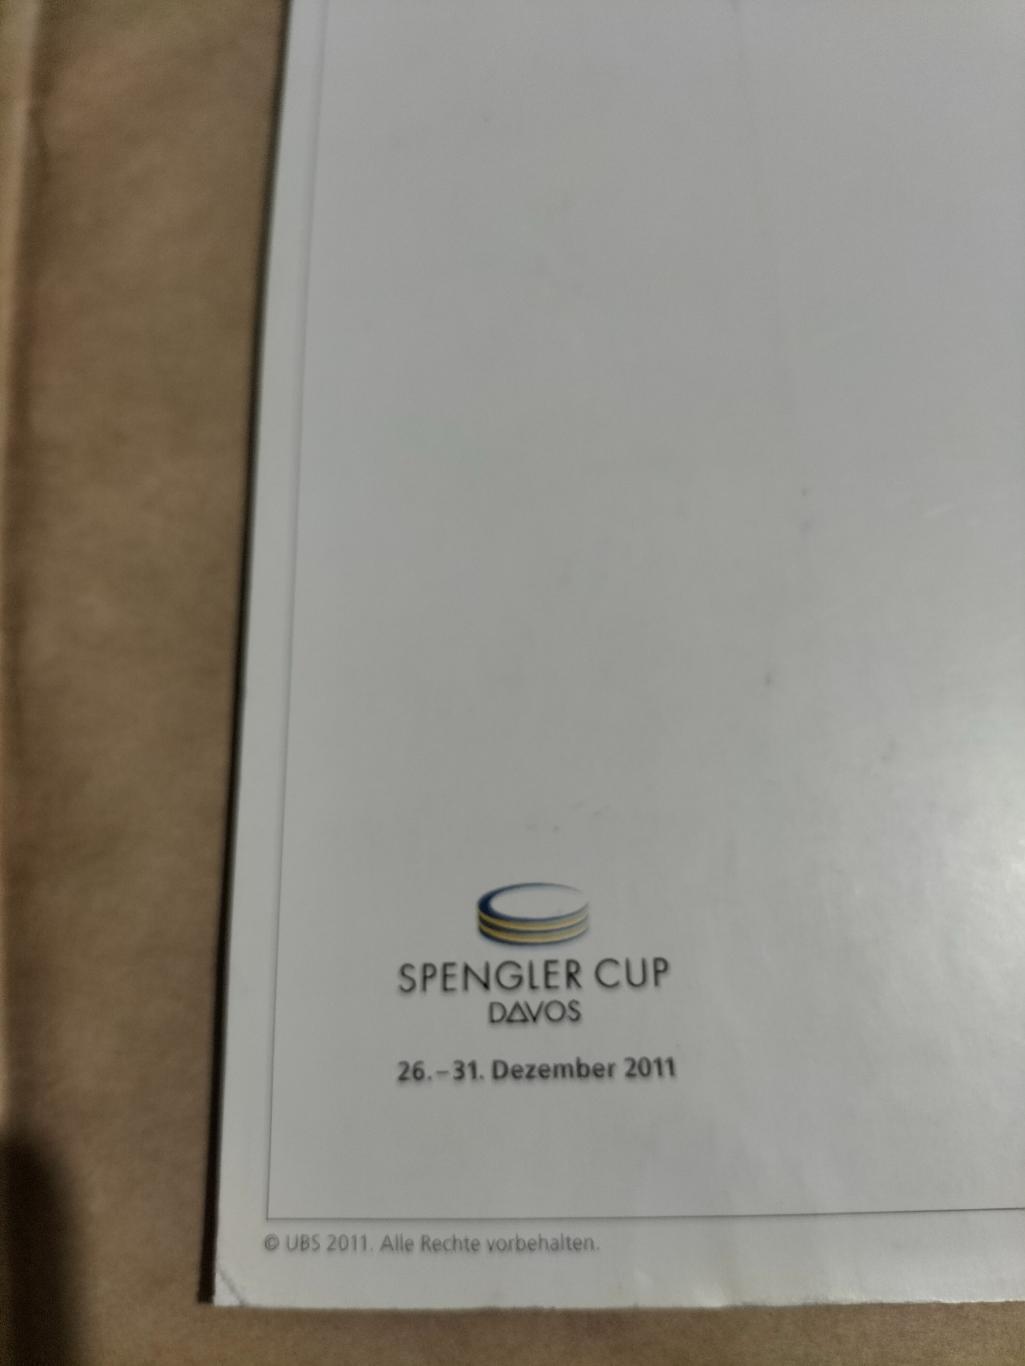 Официальная журнал кубка Шпенглера -2011 года. 1